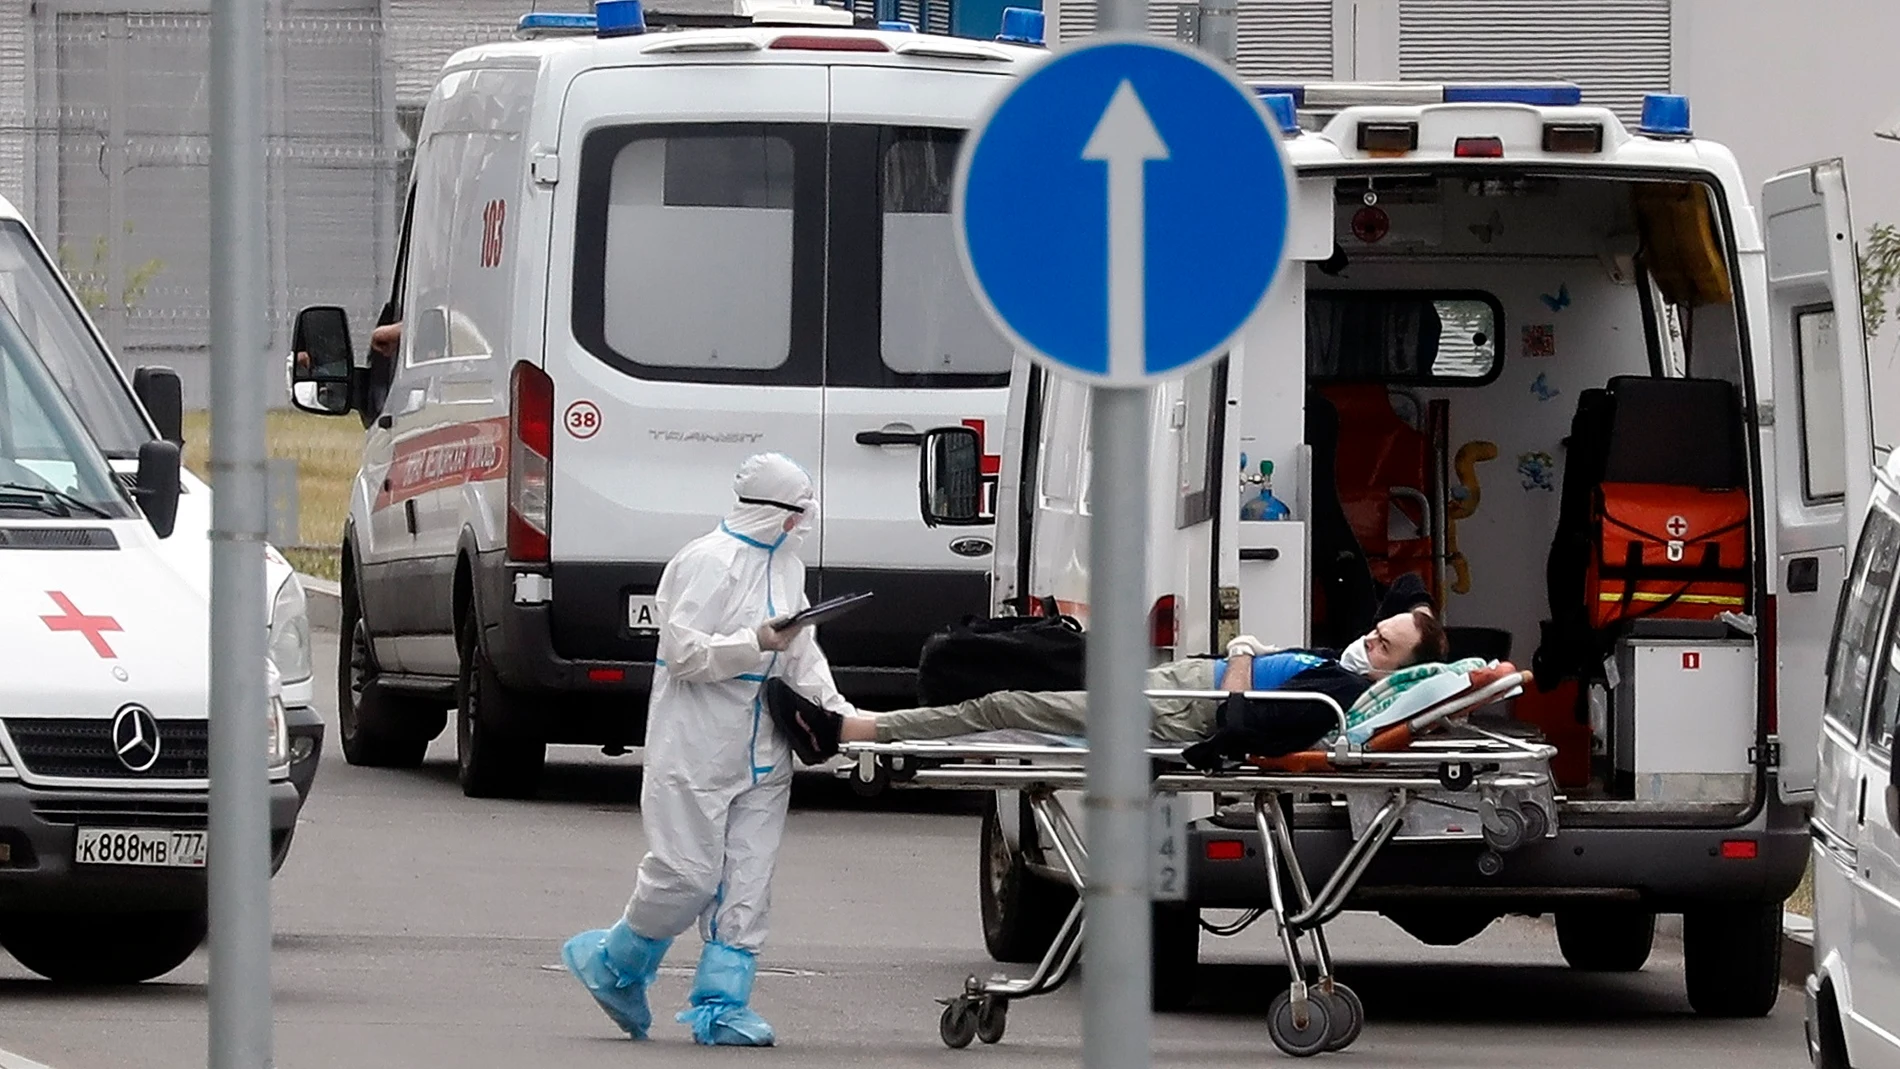 El mayor número de muertos fue detectado en San Petersburgo, donde fallecieron 59 pacientes en las últimas 24 horas, mientras que en Moscú murieron 56 personas